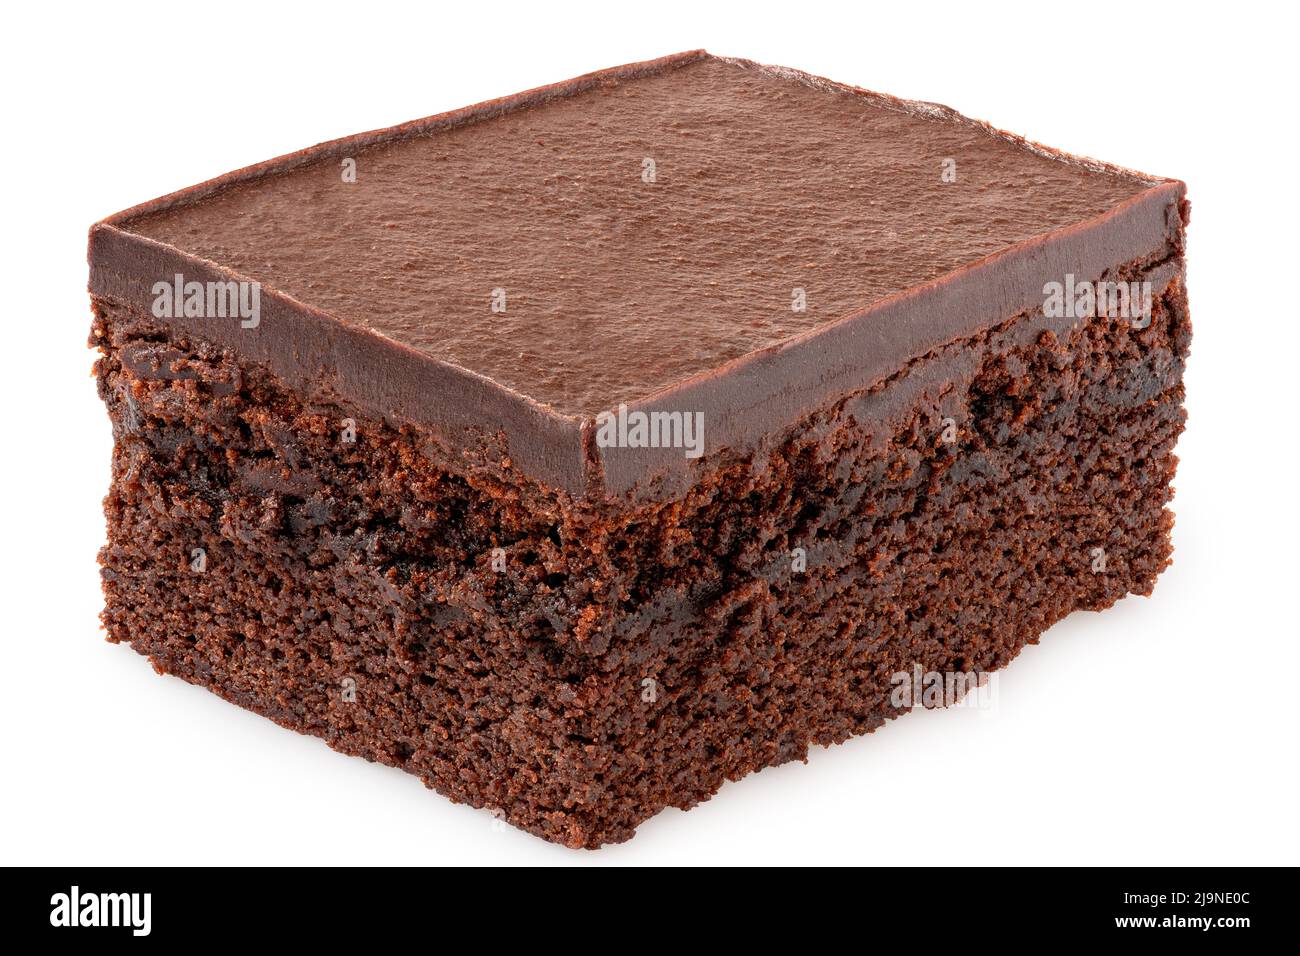 Carré de gâteau au chocolat avec glaçage au chocolat isolé sur blanc. Banque D'Images